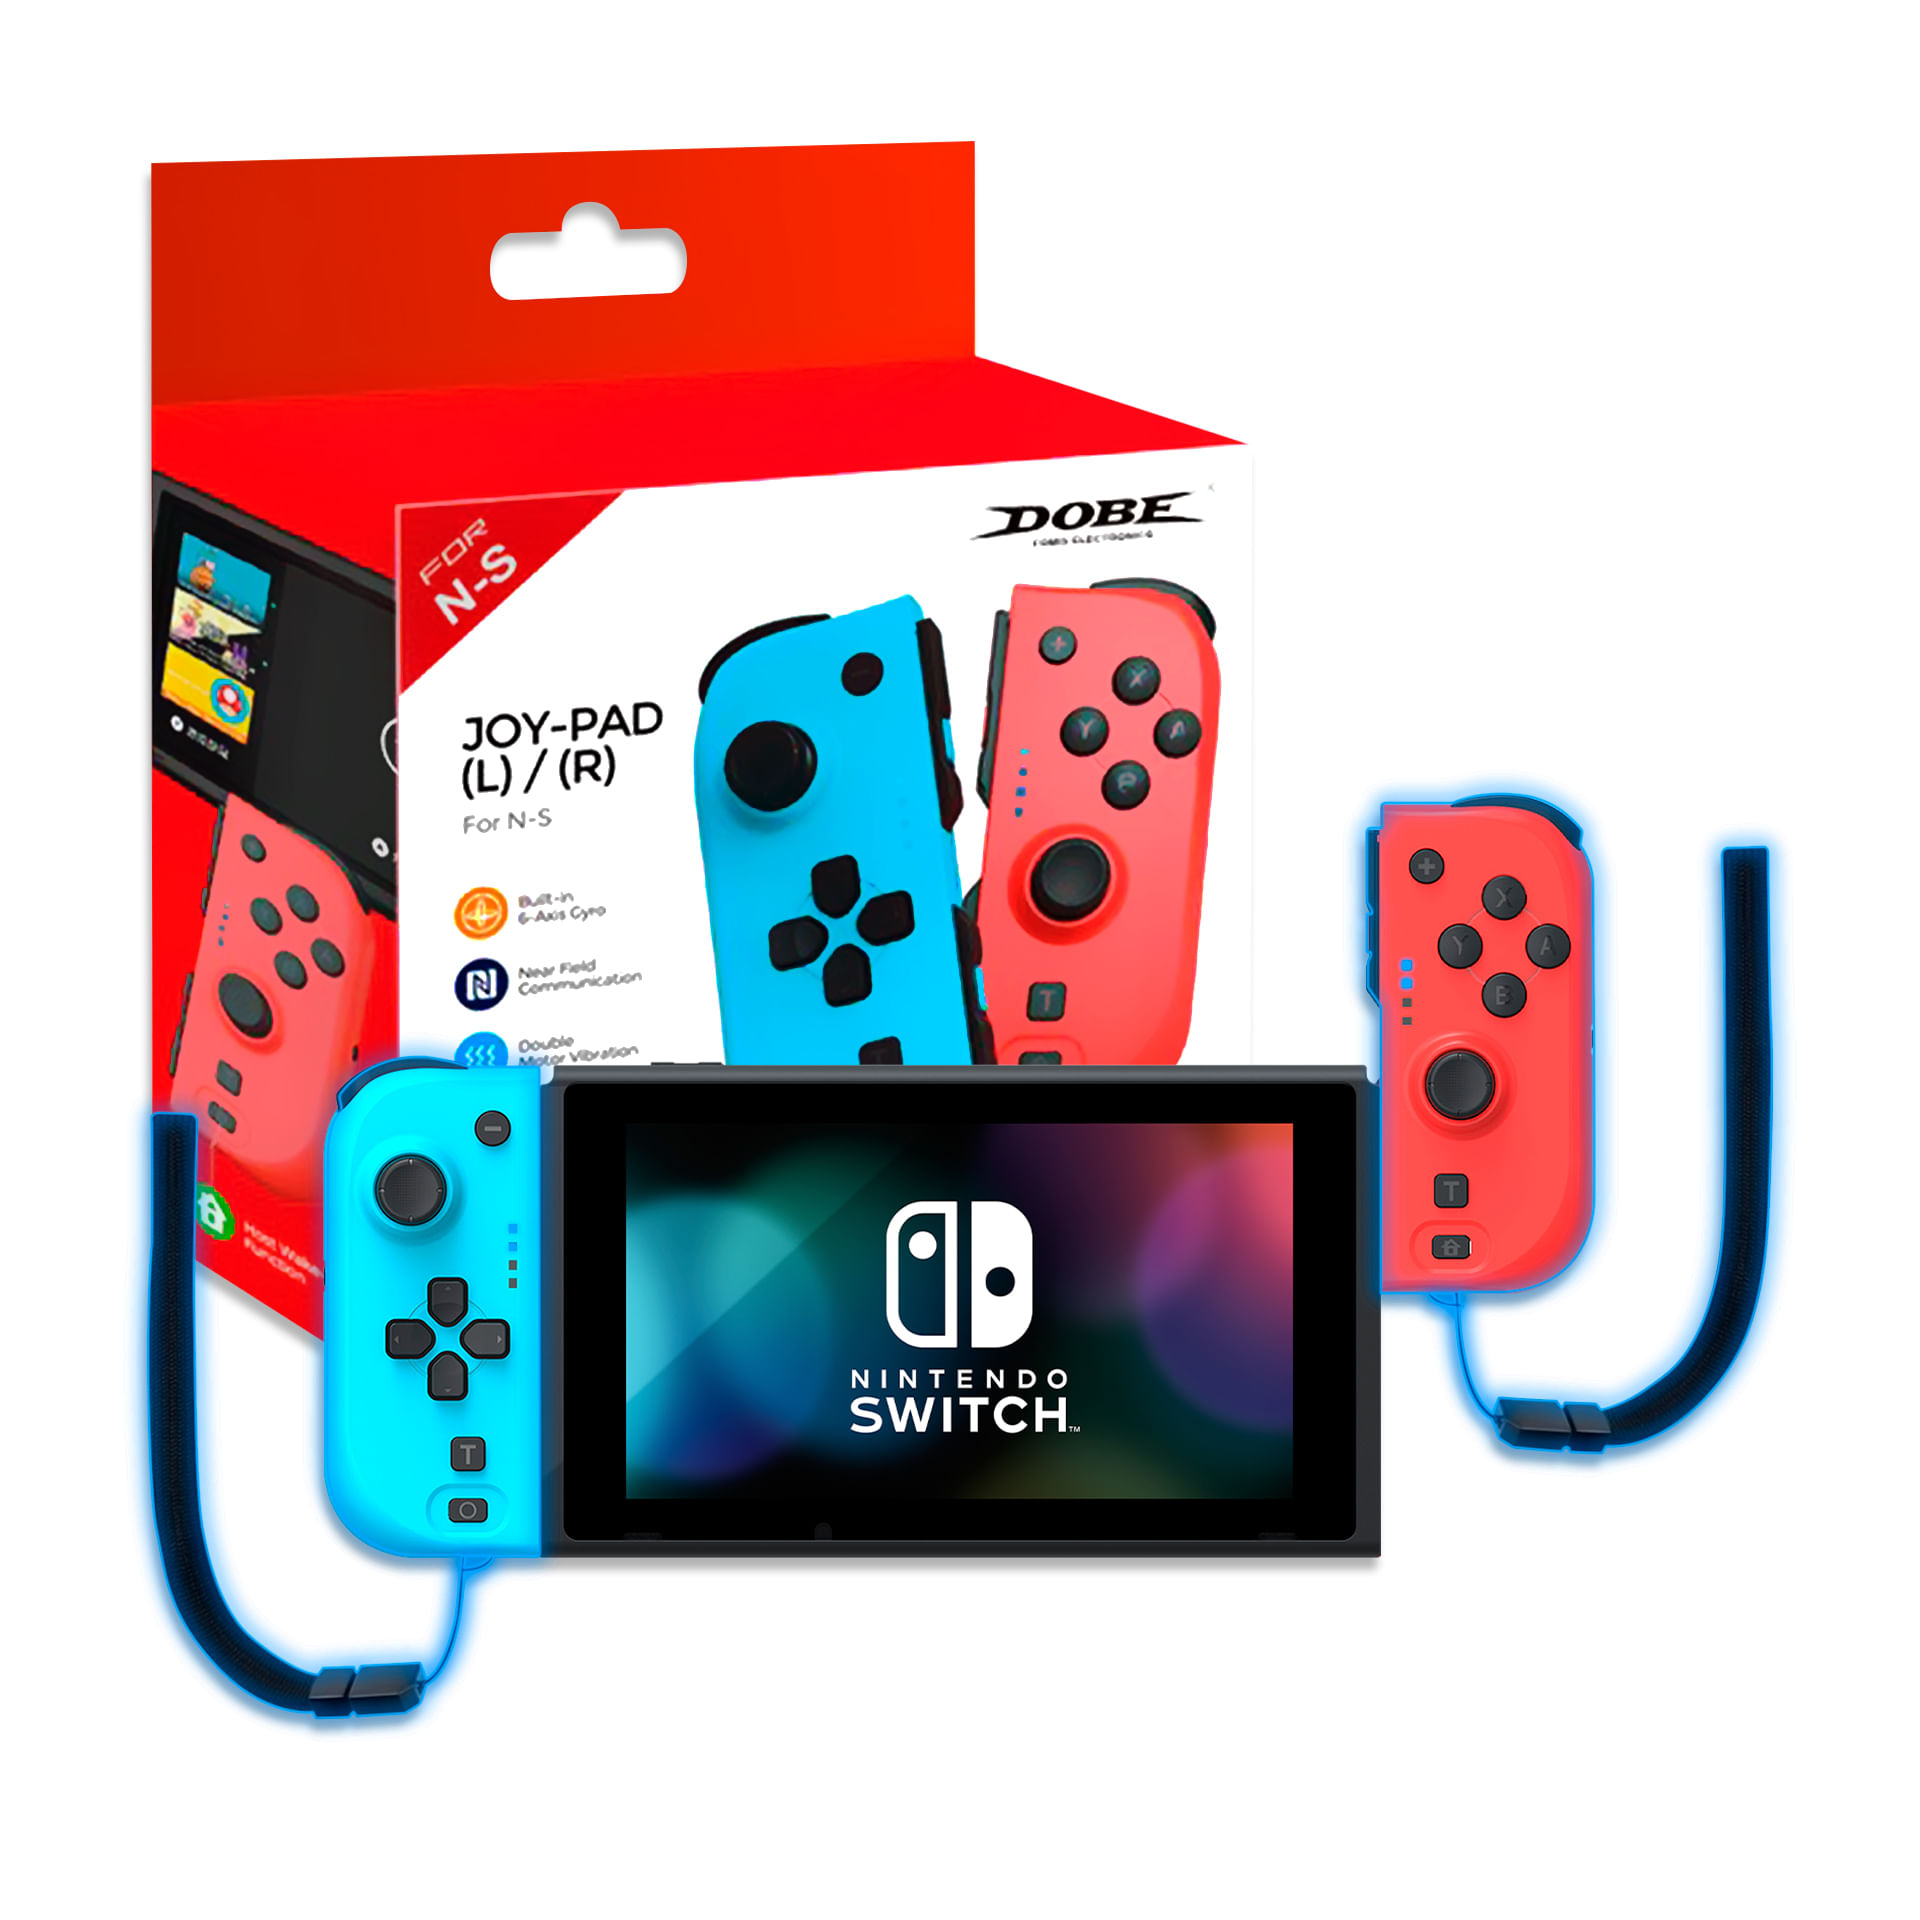 Controles Joy Con Izquierdo Derecho para Nintendo Switch